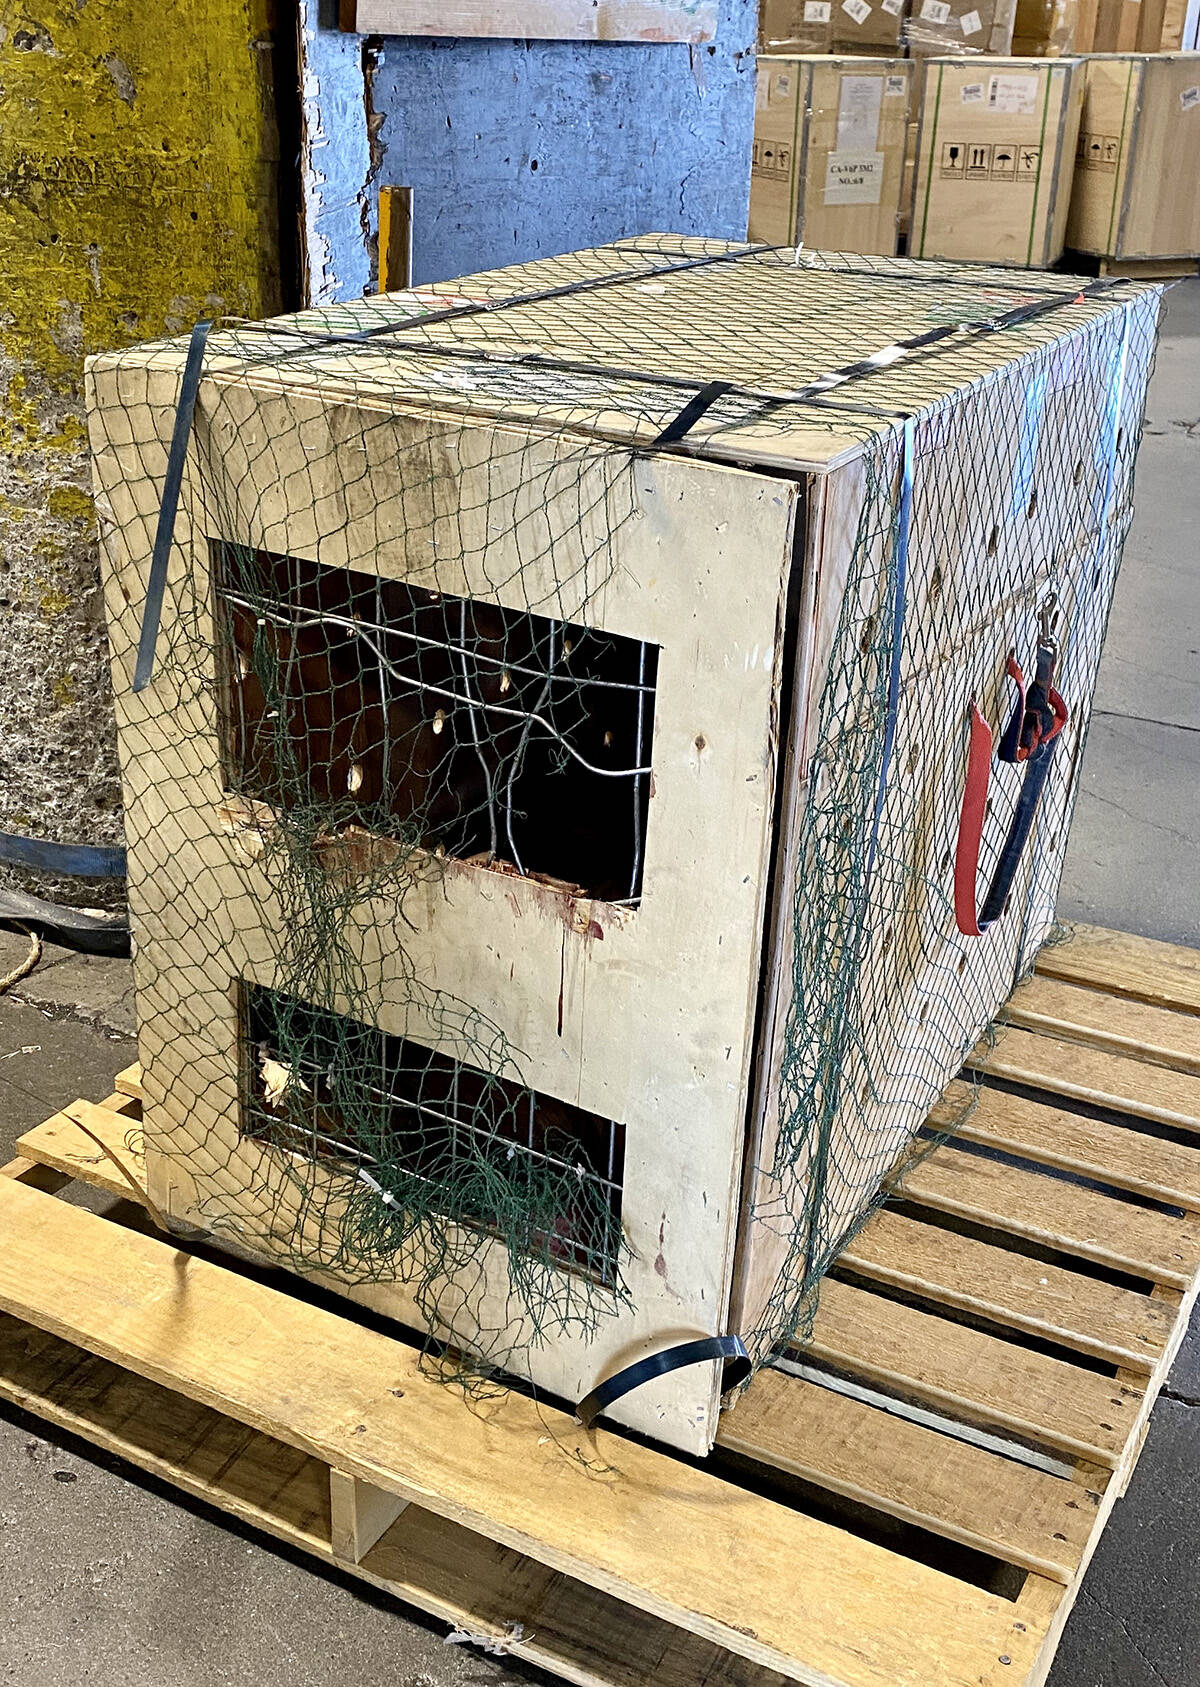 Mavericks crate was badly damaged from him trying to escape during the flight. (Submitted photo)